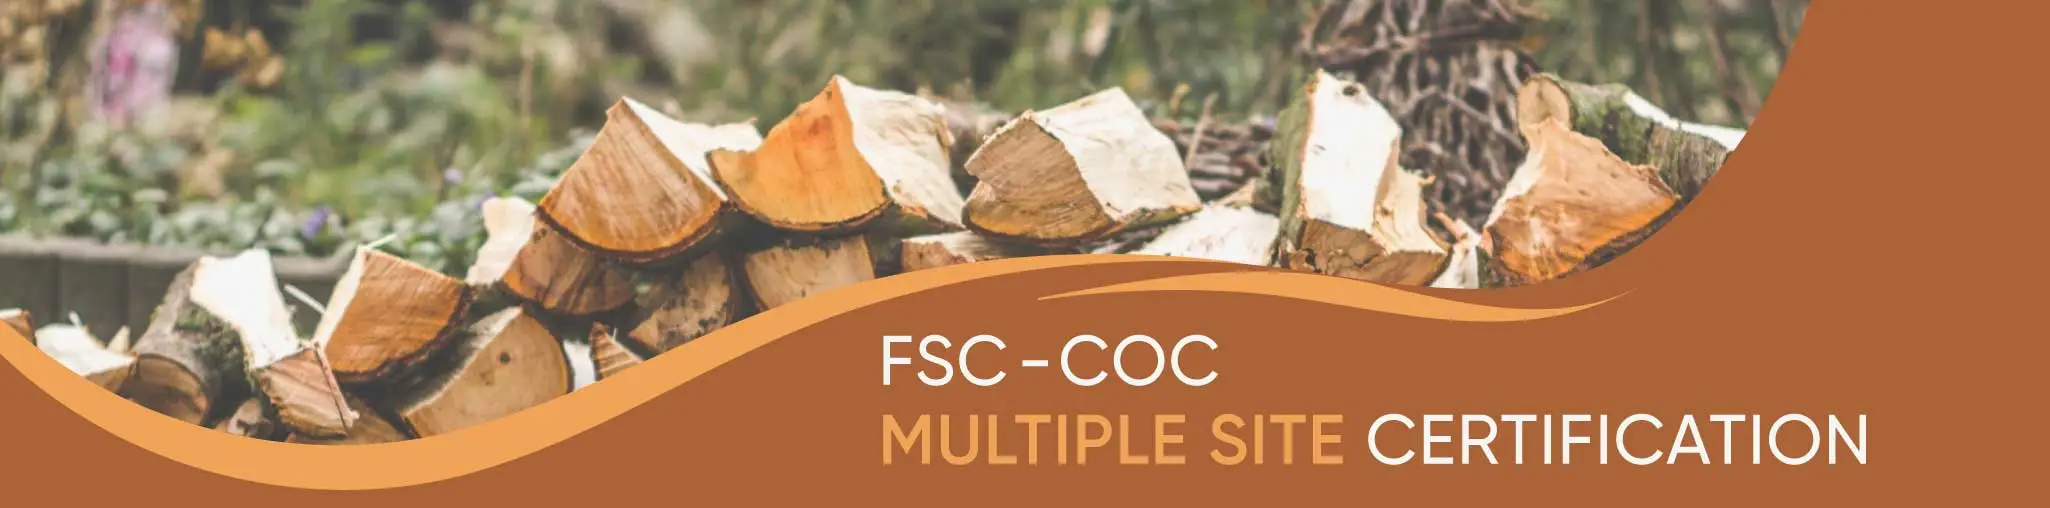 FSC-CoC Multiple Site Certification